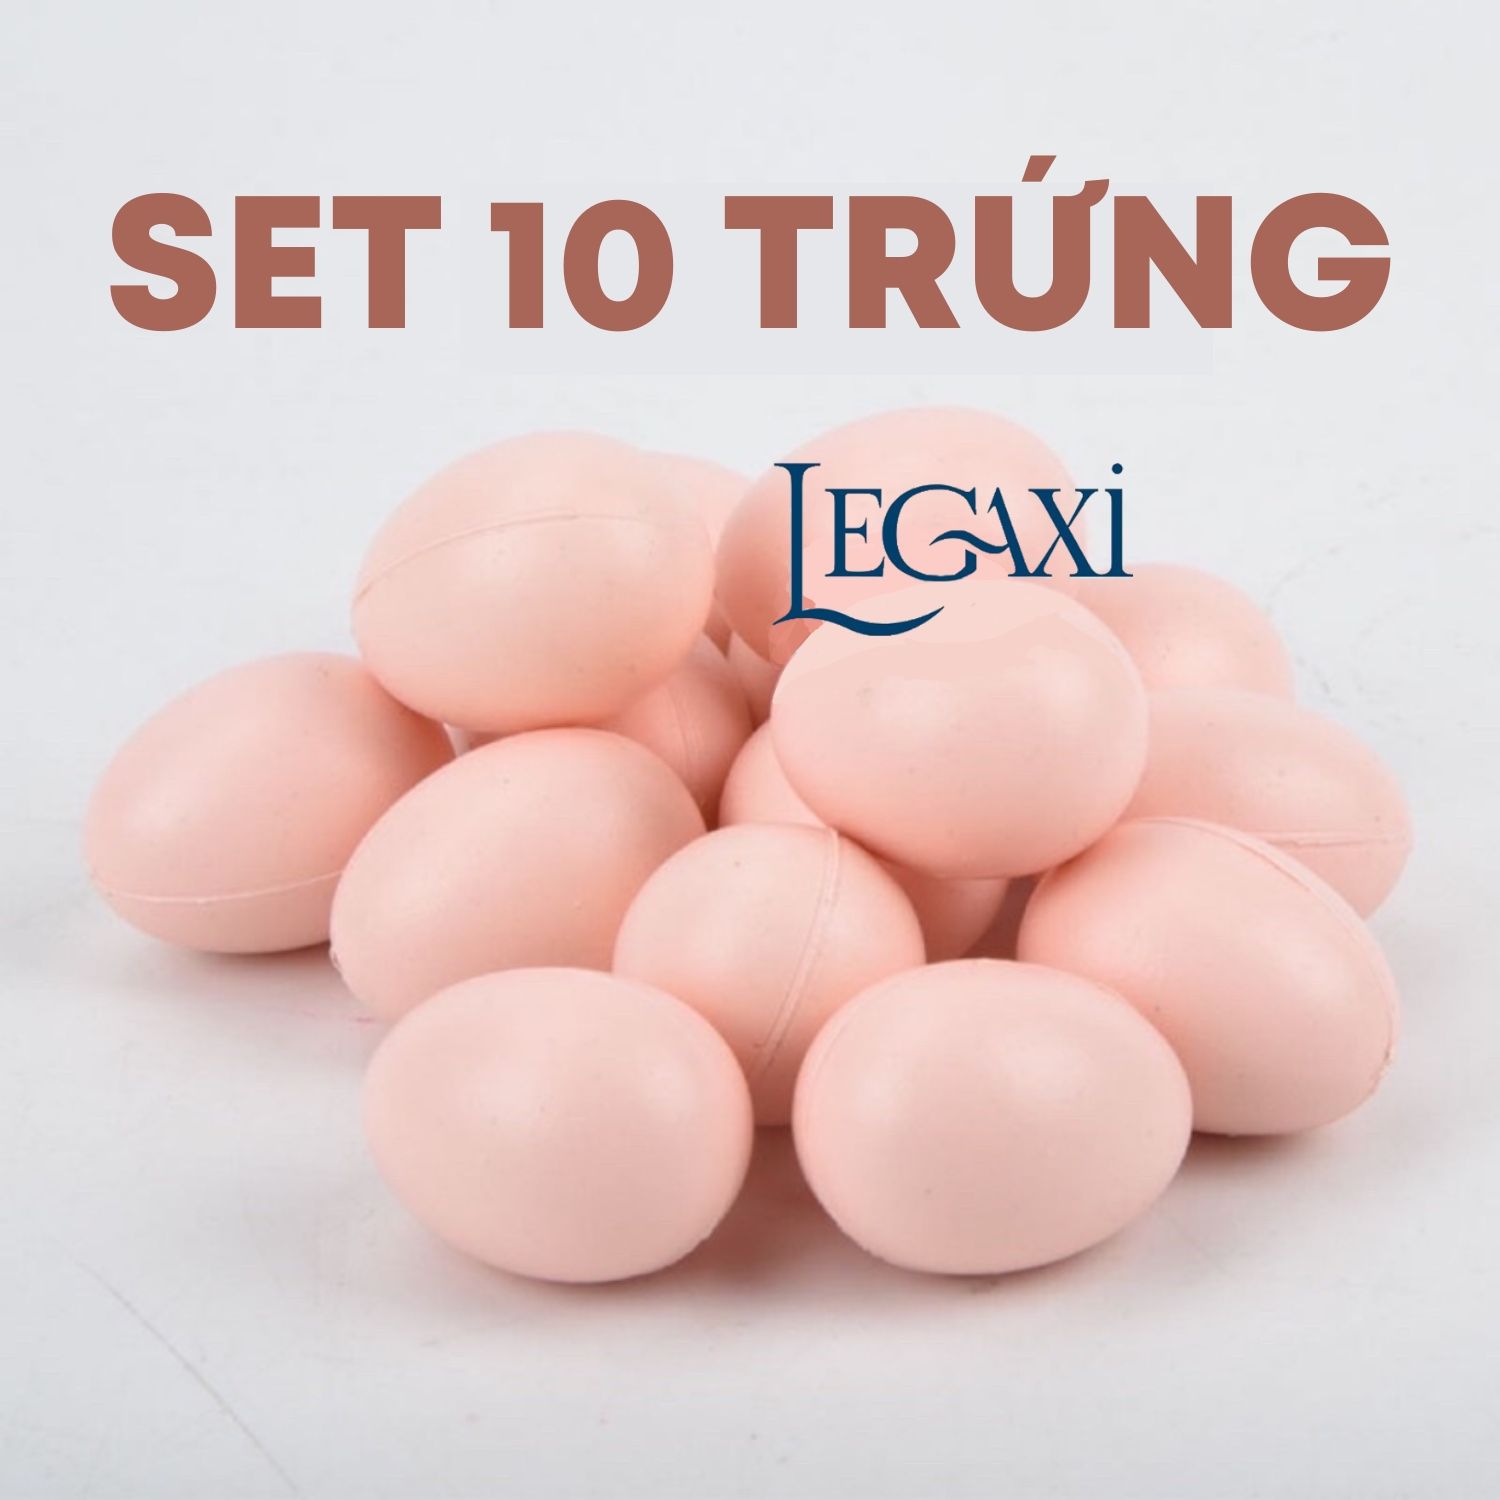 Set 10 trứng gà trứng vịt gia cầm nông trại thu hoạch trứng phục sinh mô hình đồ chơi cho bé Legaxi